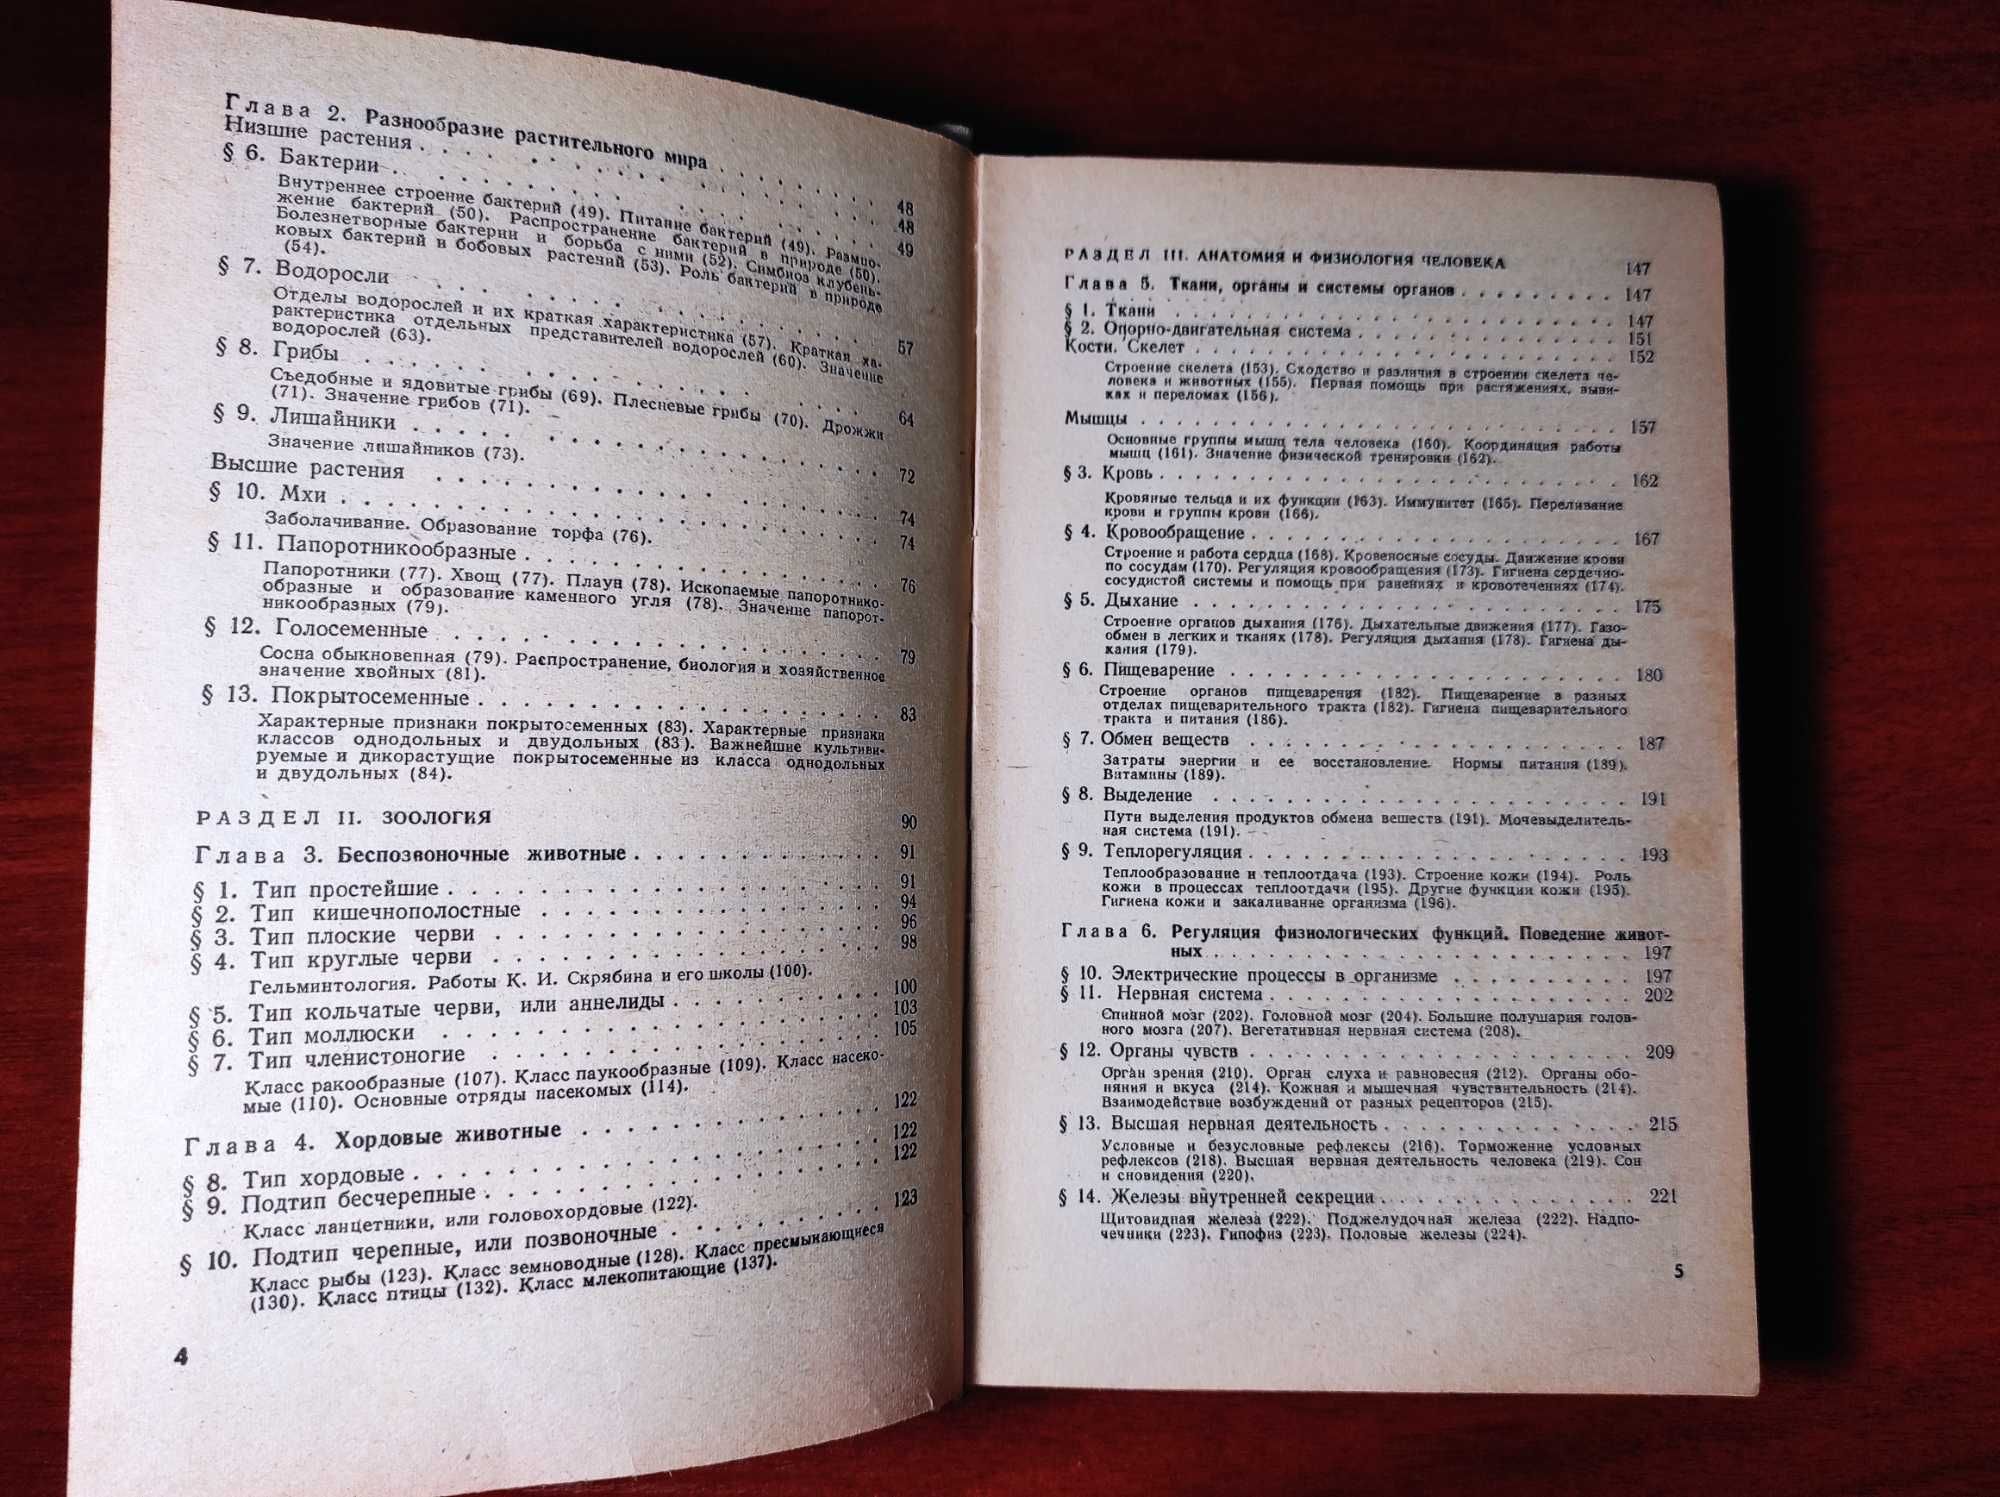 Справочник по биологии К.М. Сытника 1979 год